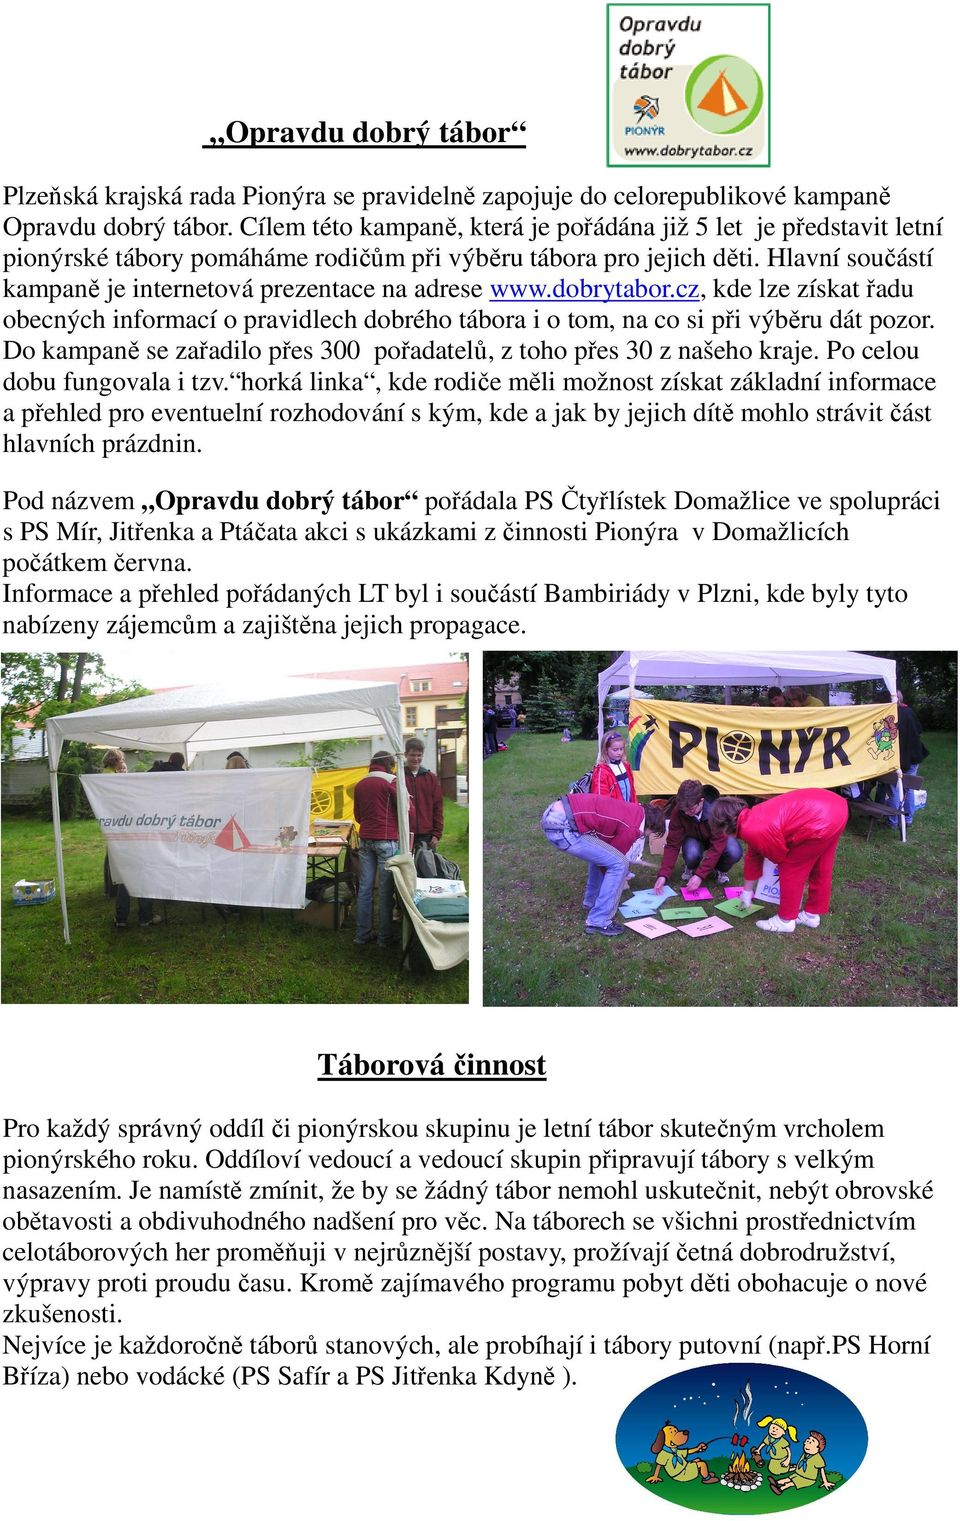 Hlavní součástí kampaně je internetová prezentace na adrese www.dobrytabor.cz, kde lze získat řadu obecných informací o pravidlech dobrého tábora i o tom, na co si při výběru dát pozor.